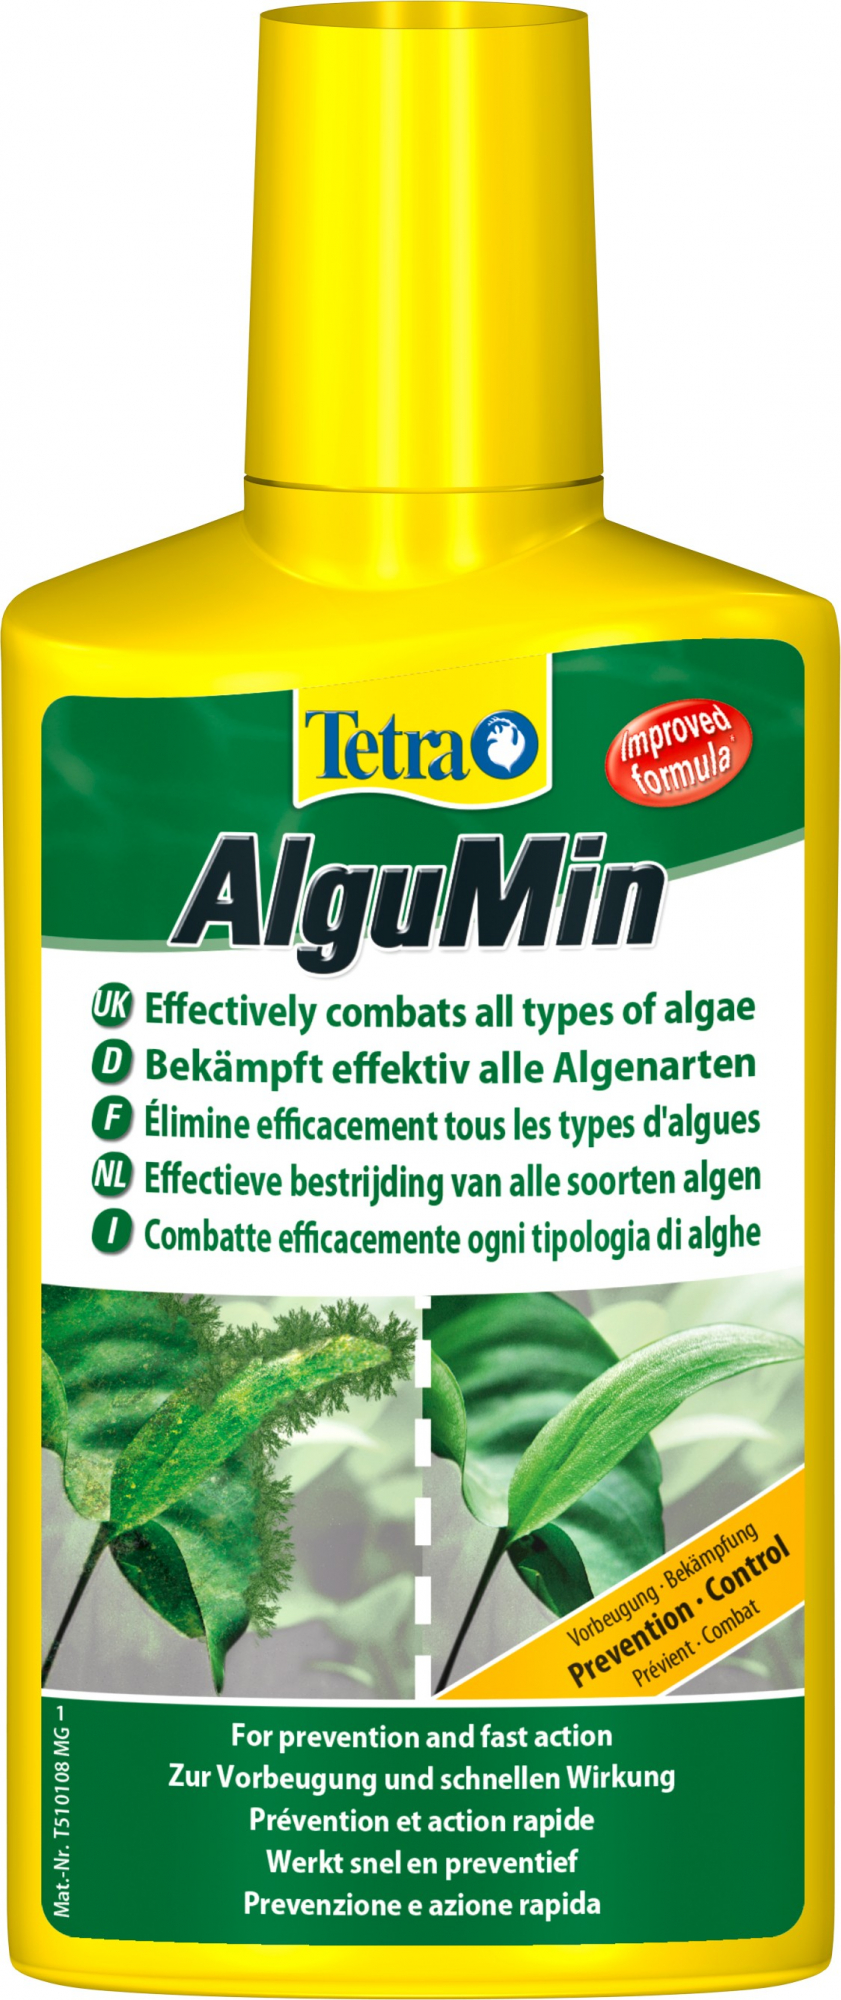 Tetra AlguMin, lutte douce contre les algues